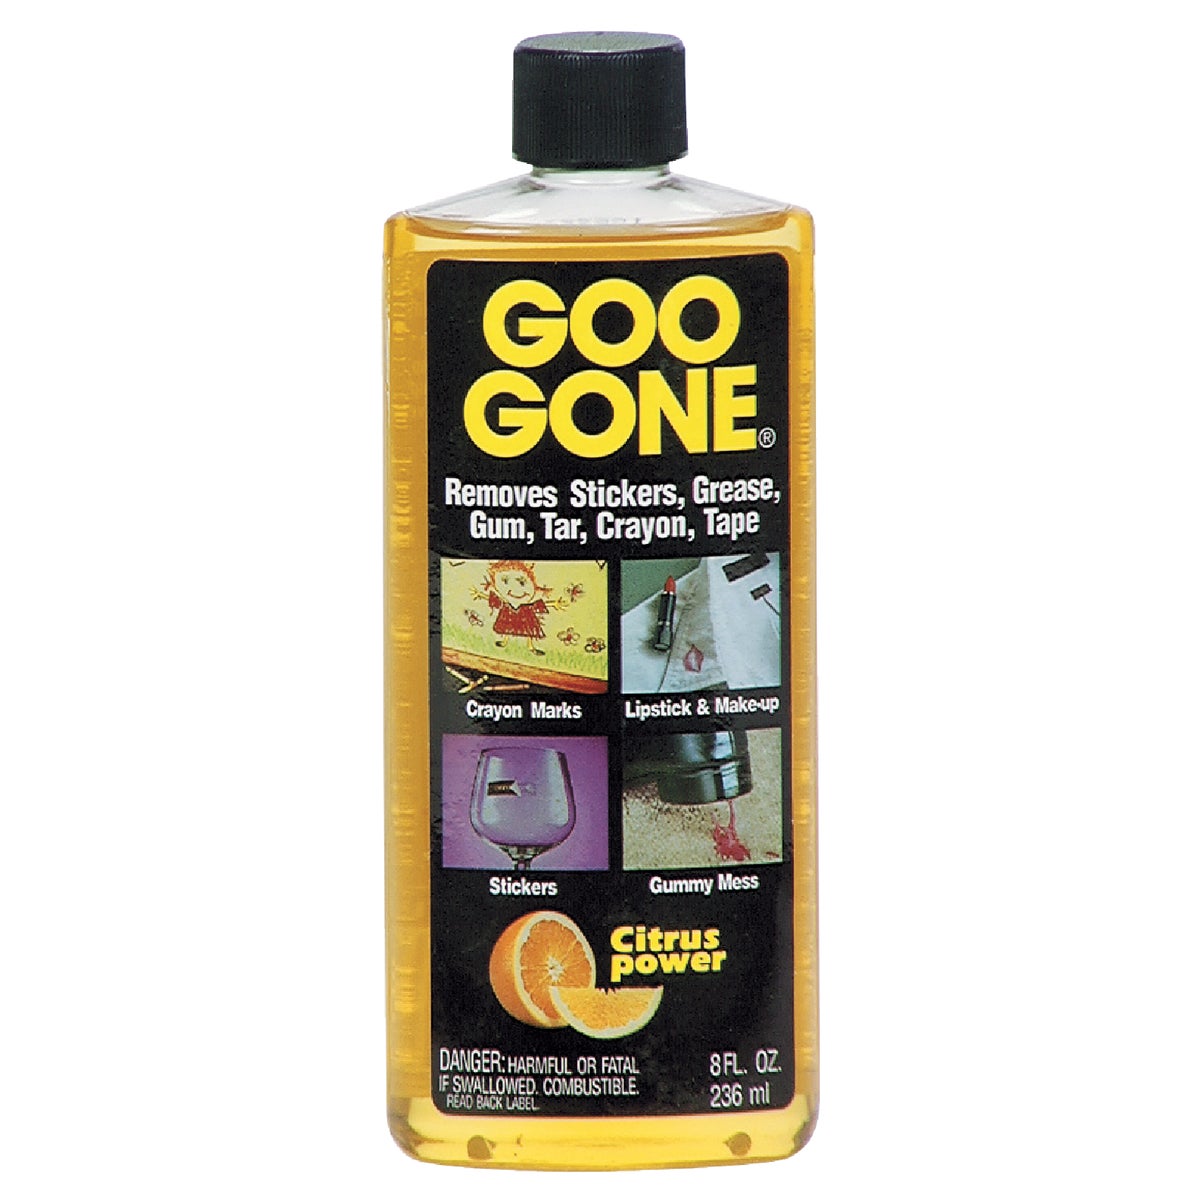 Goo go. Goo gone. Goo. Gum removing. Been gone.